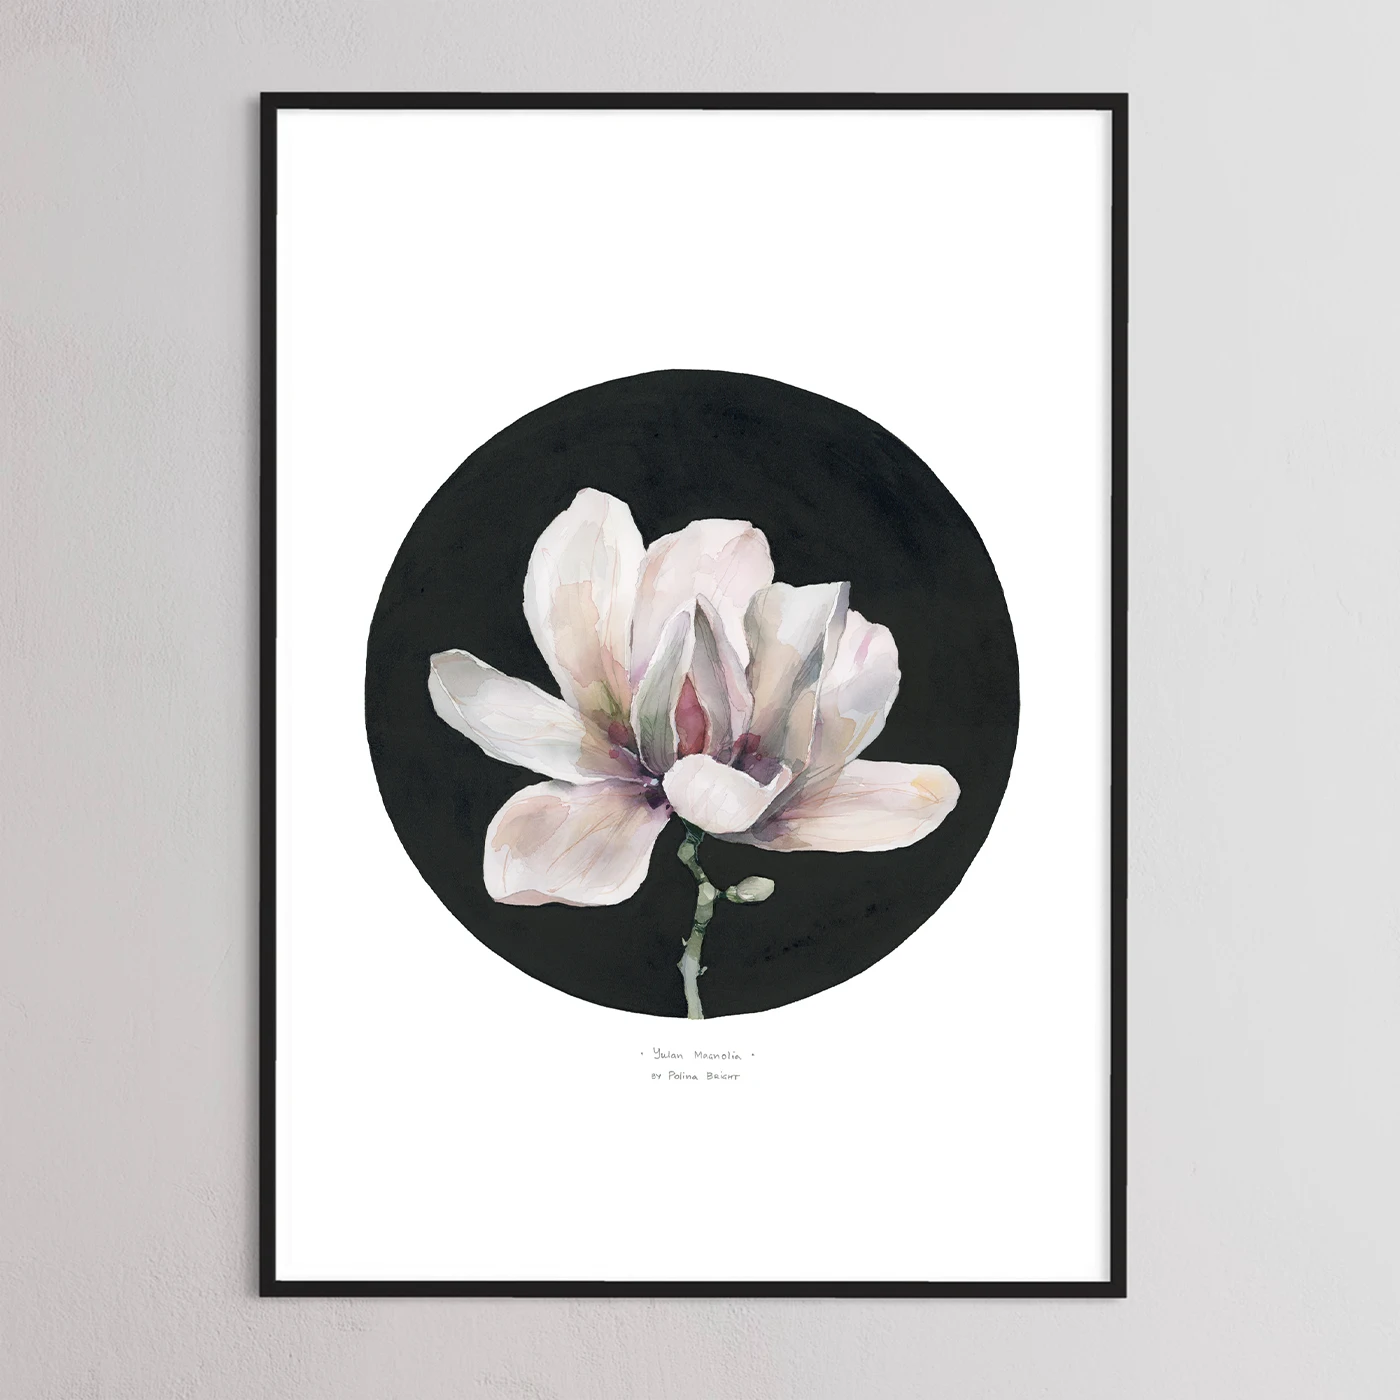 Yulan magnolia print by Polina Bright